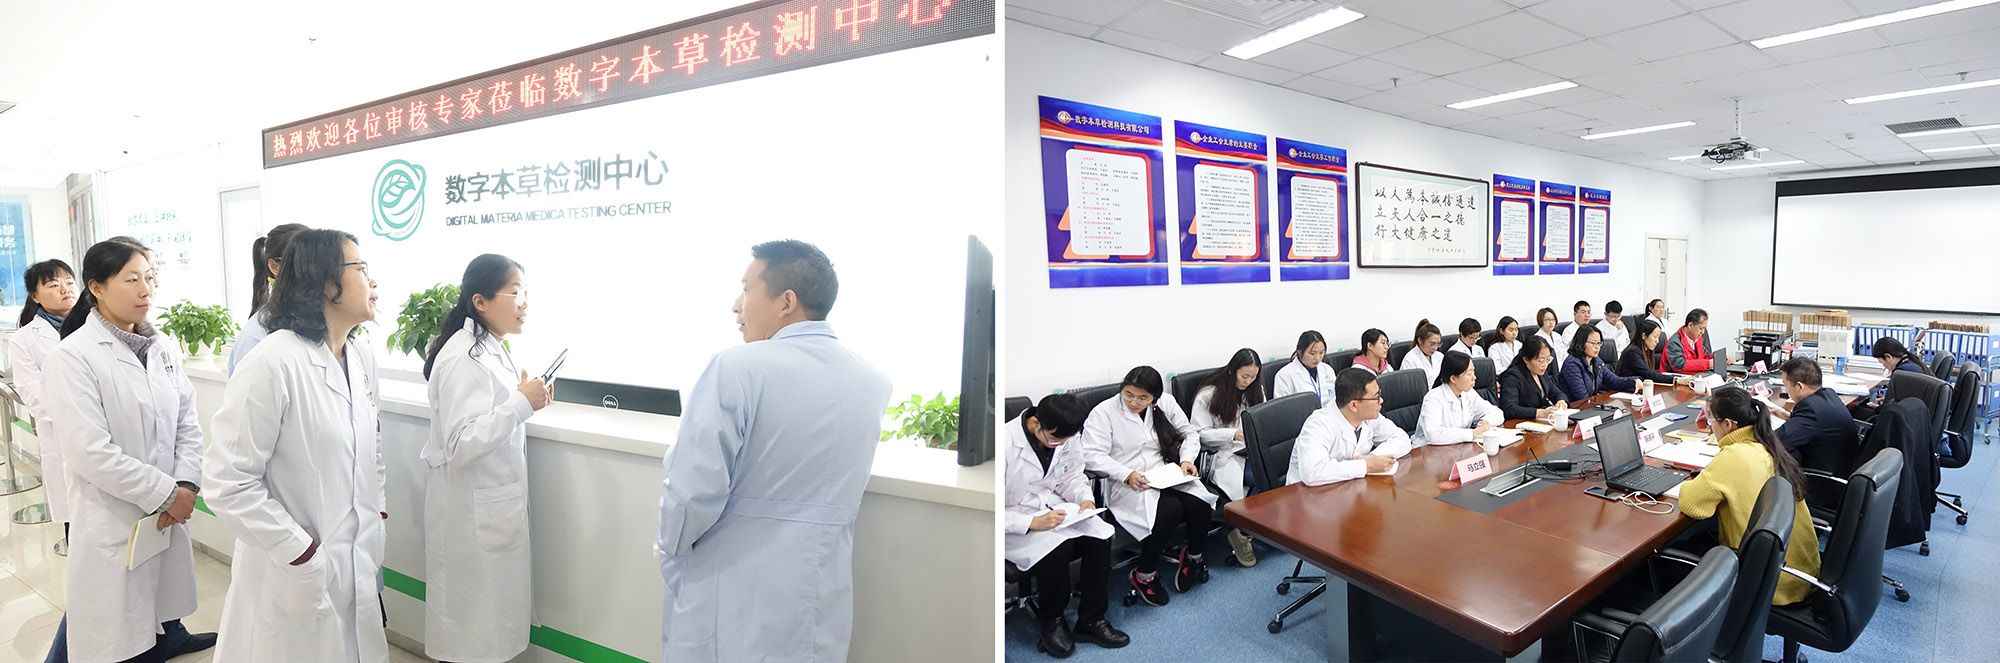 河北省中药材质量检验检测研究中心有限公司顺利通过 CNAS监督现场评审